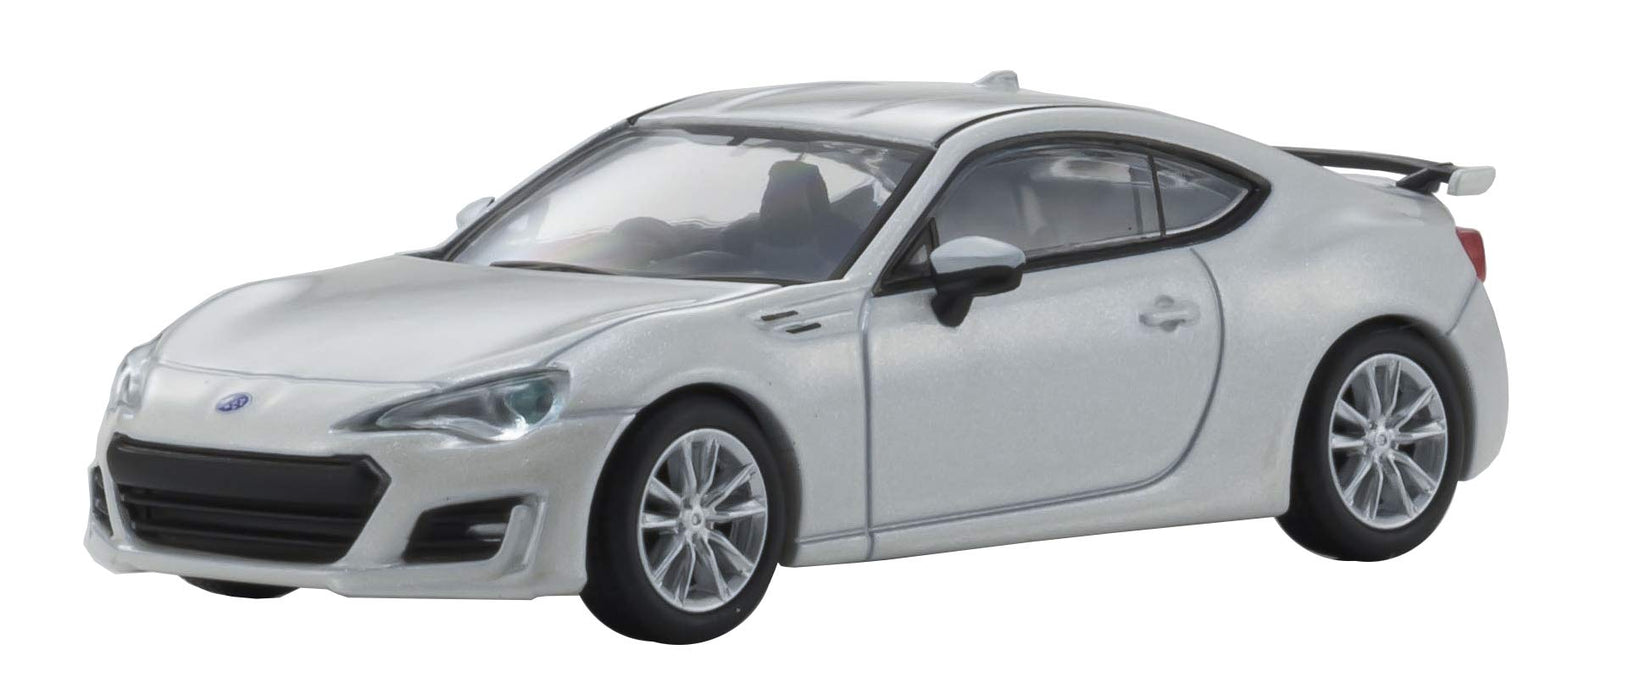 Kyosho Original 1/64 Subaru Brz Gt 2016 White Finished Product Japanese Scale Car Toys